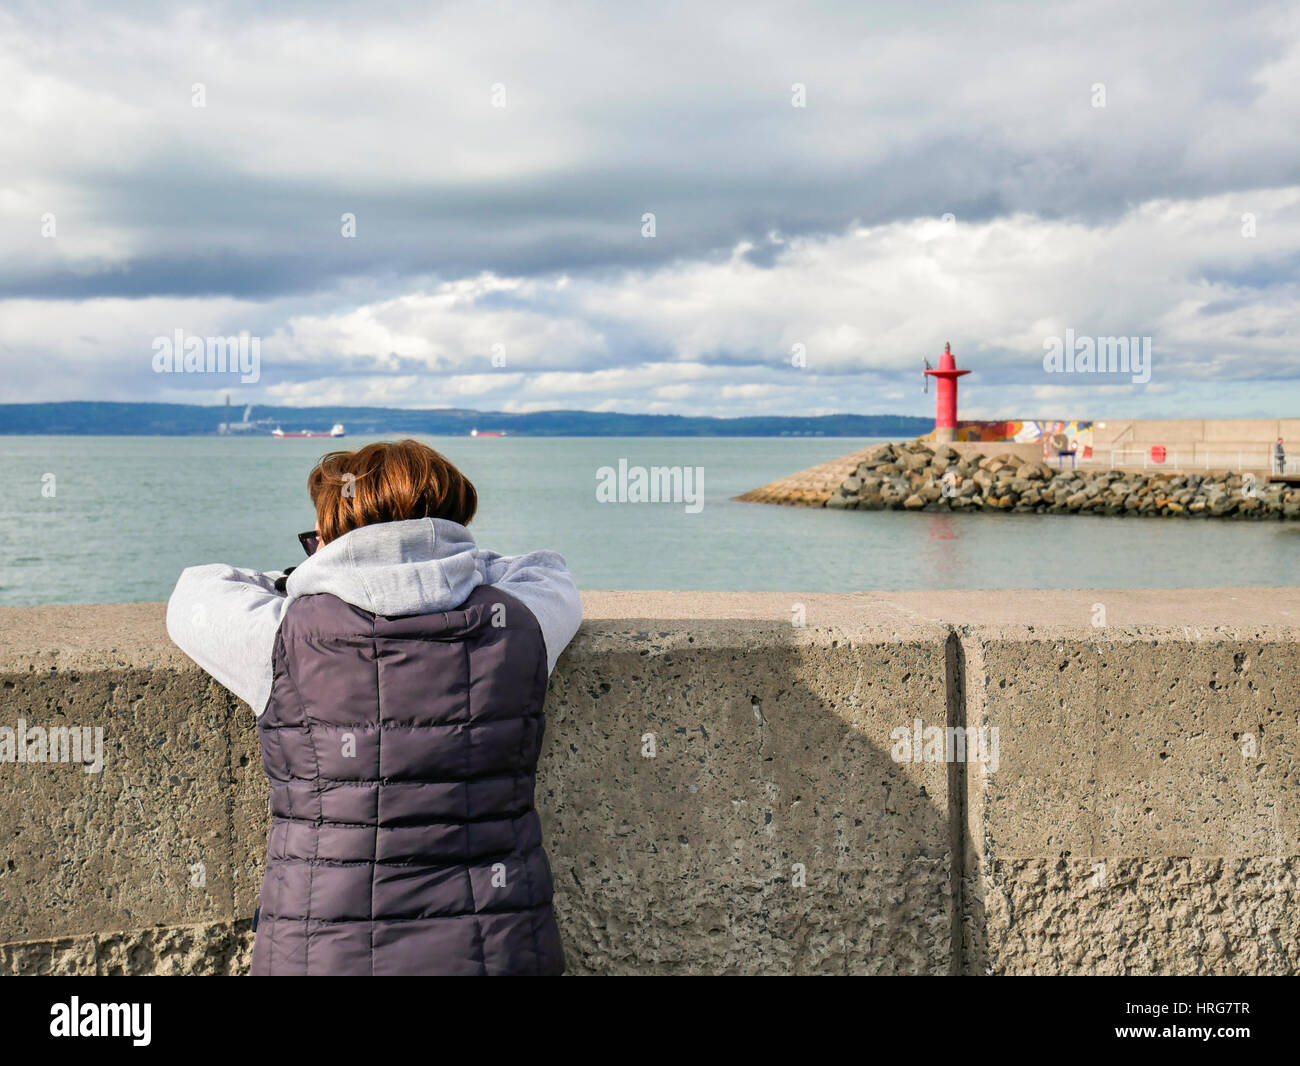 Bangor, settentrionale, Irlanda. 1 Marzo, 2017. Regno Unito meteo: una donna guarda fuori a Belfast Lough come Bangor goduto generalmente una giornata di sole anche se la temperatura raggiunta solo intorno a 8C. È prevista pioggia per questa sera con la temperatura scenda a 4C. Credito: J Orr/Alamy Live News Foto Stock